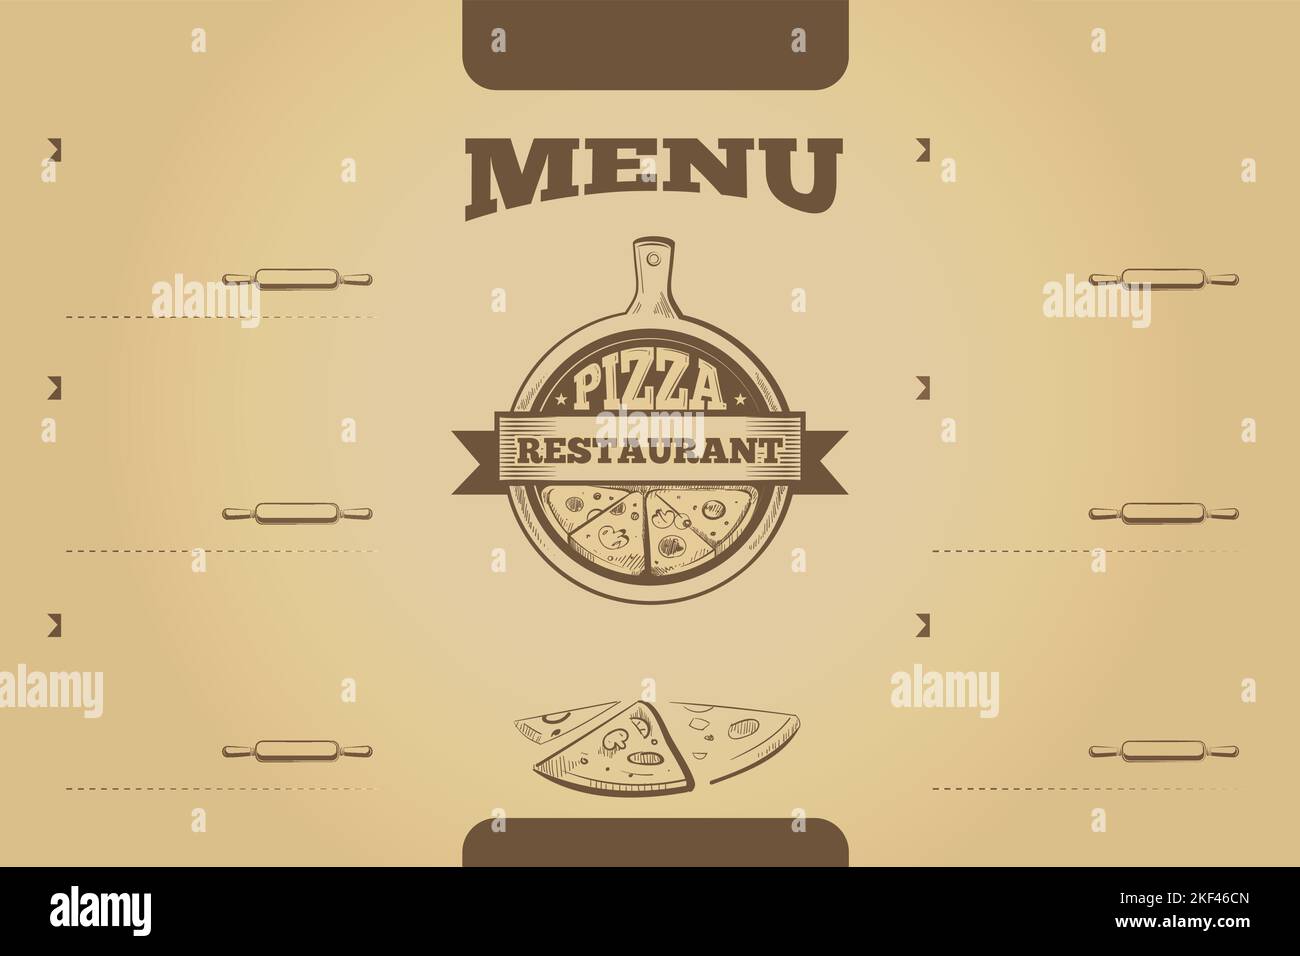 Modello di menu pizza ristaraunt su carta invecchiata Illustrazione Vettoriale